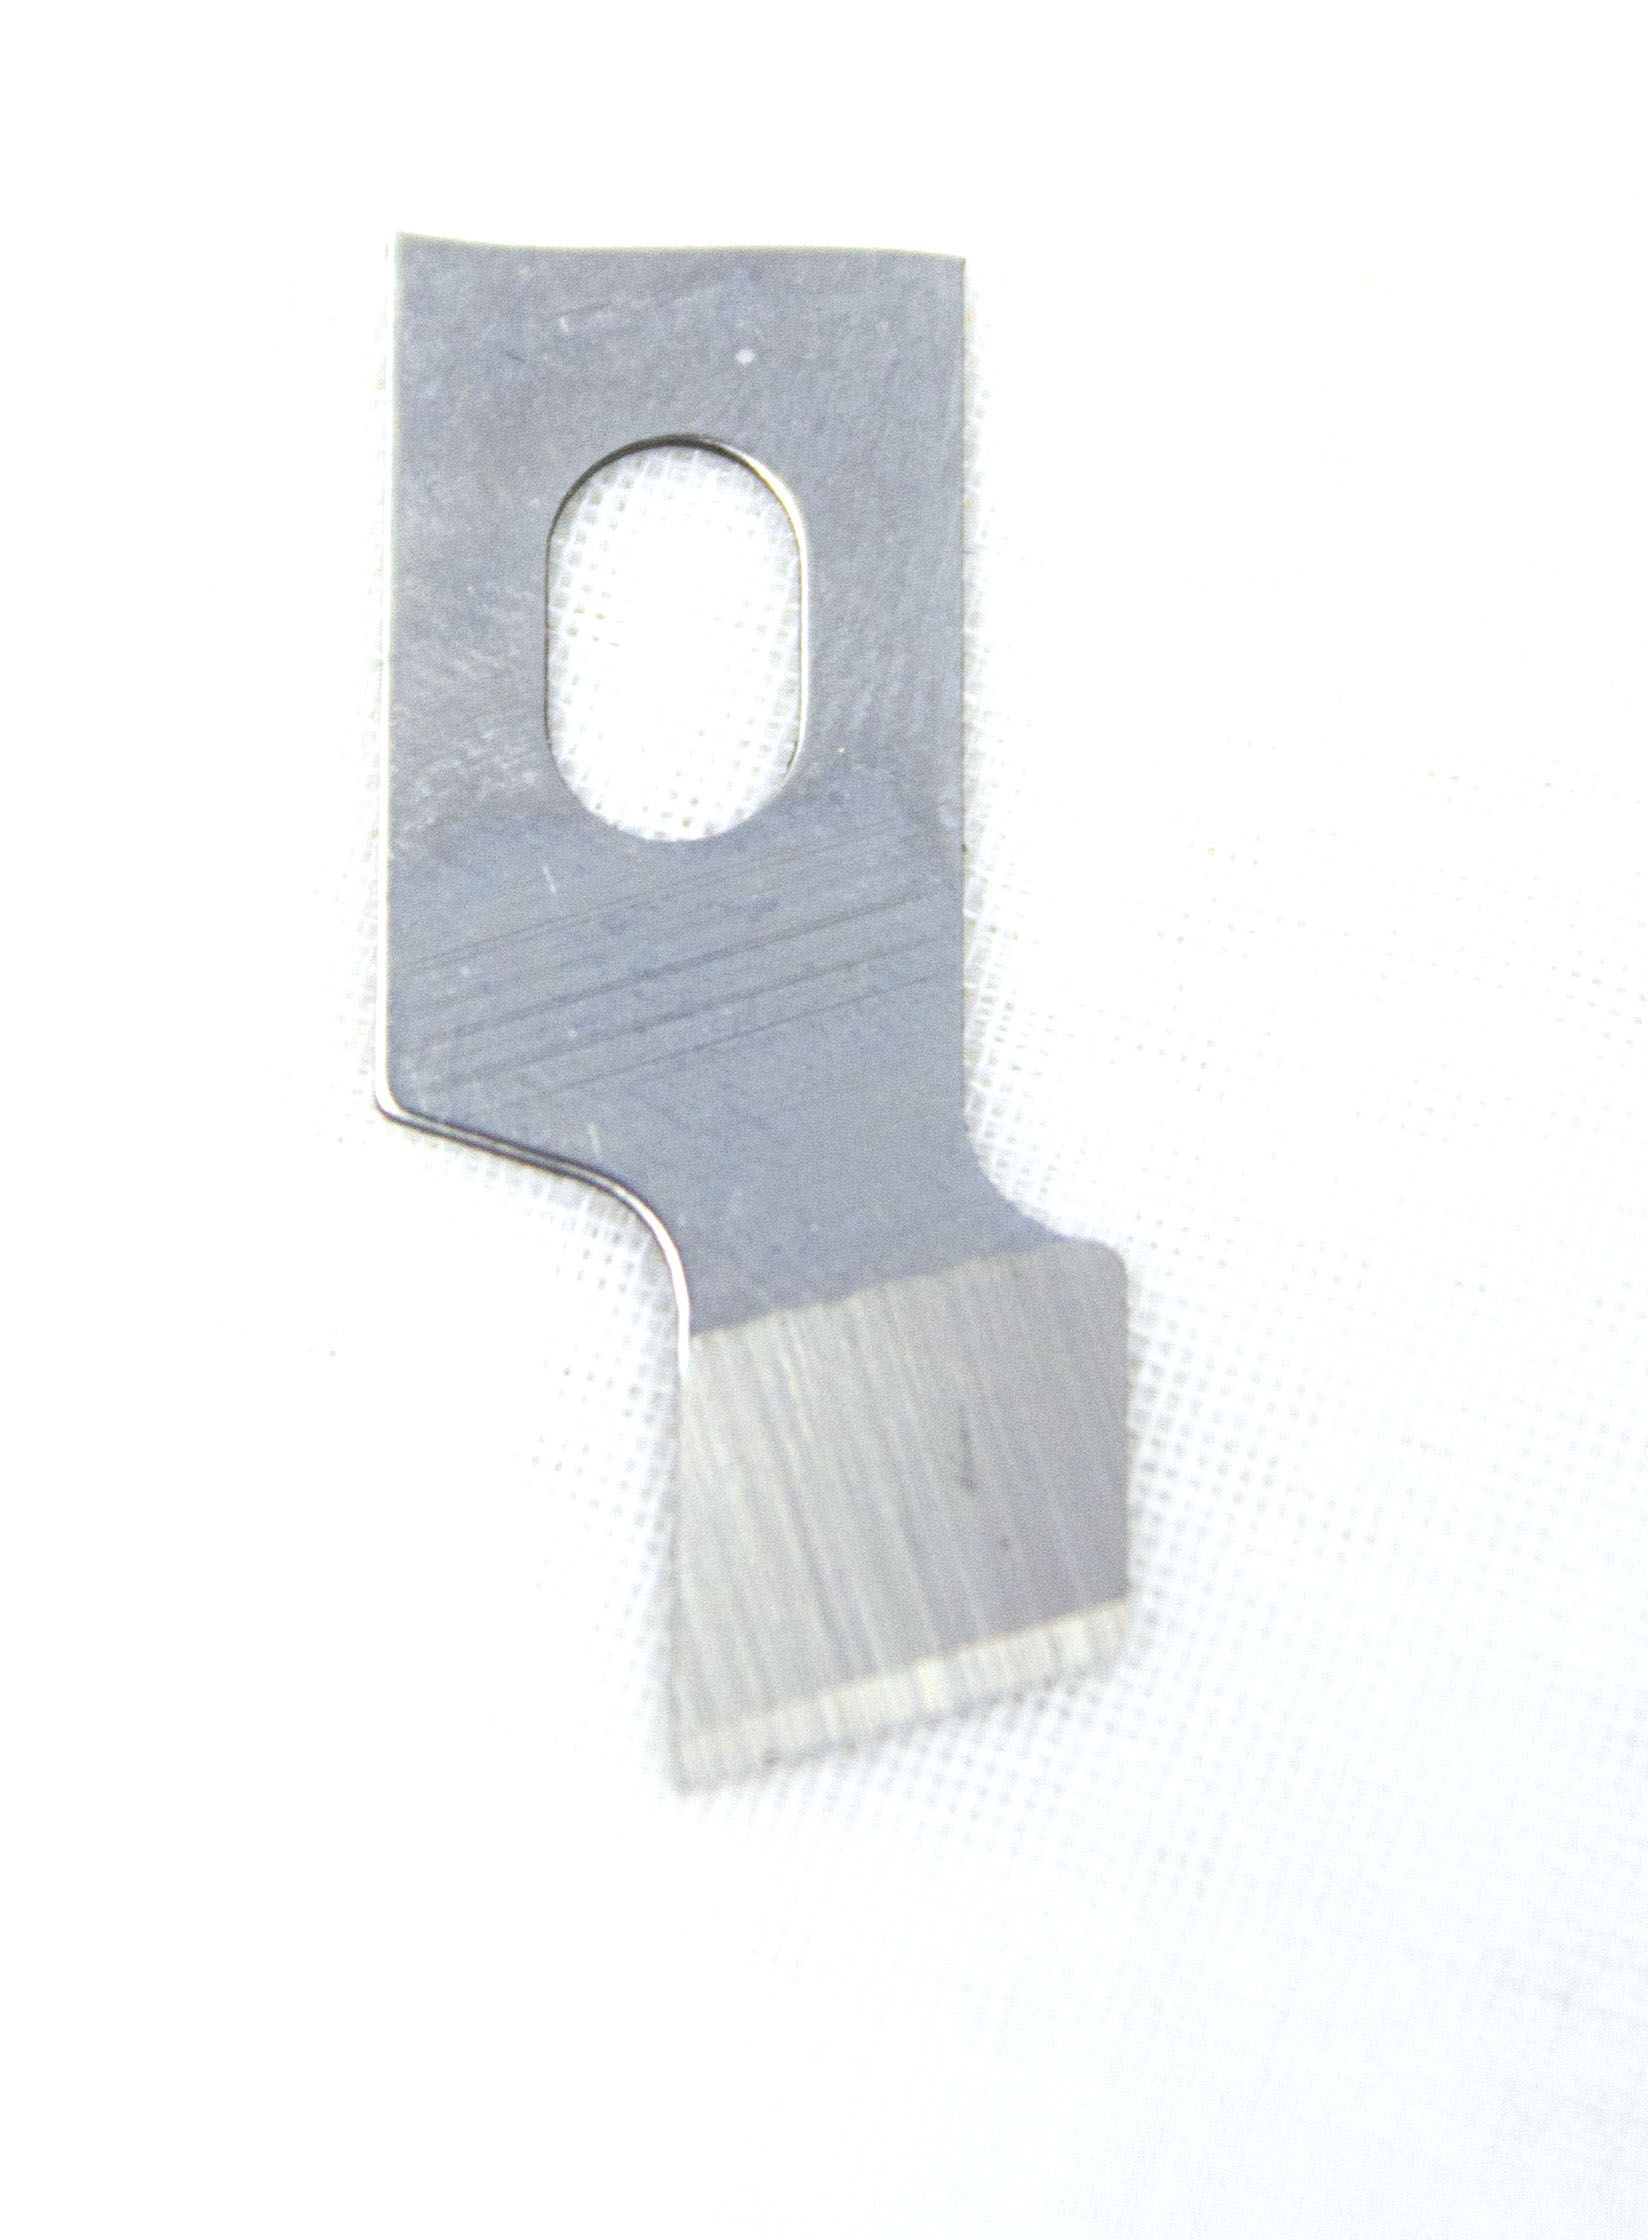 Каталог Нож прорубной 9,5 мм (3/8) для петельных машин Текстиль Центр 